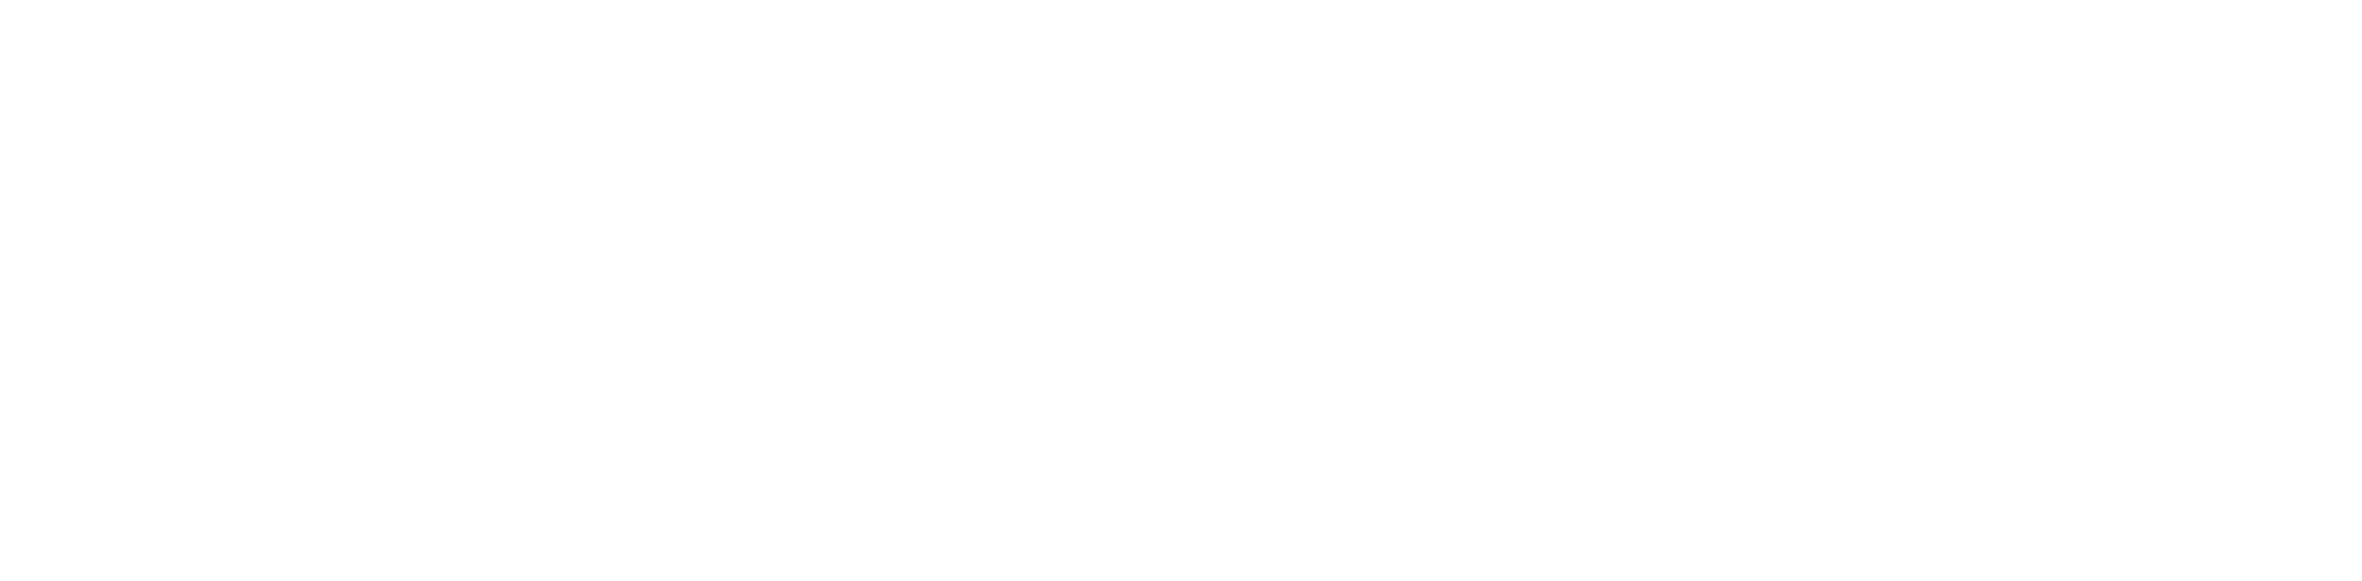 اداره کل فرهنگ و ارشاد اسلامی آذربایجان شرقی